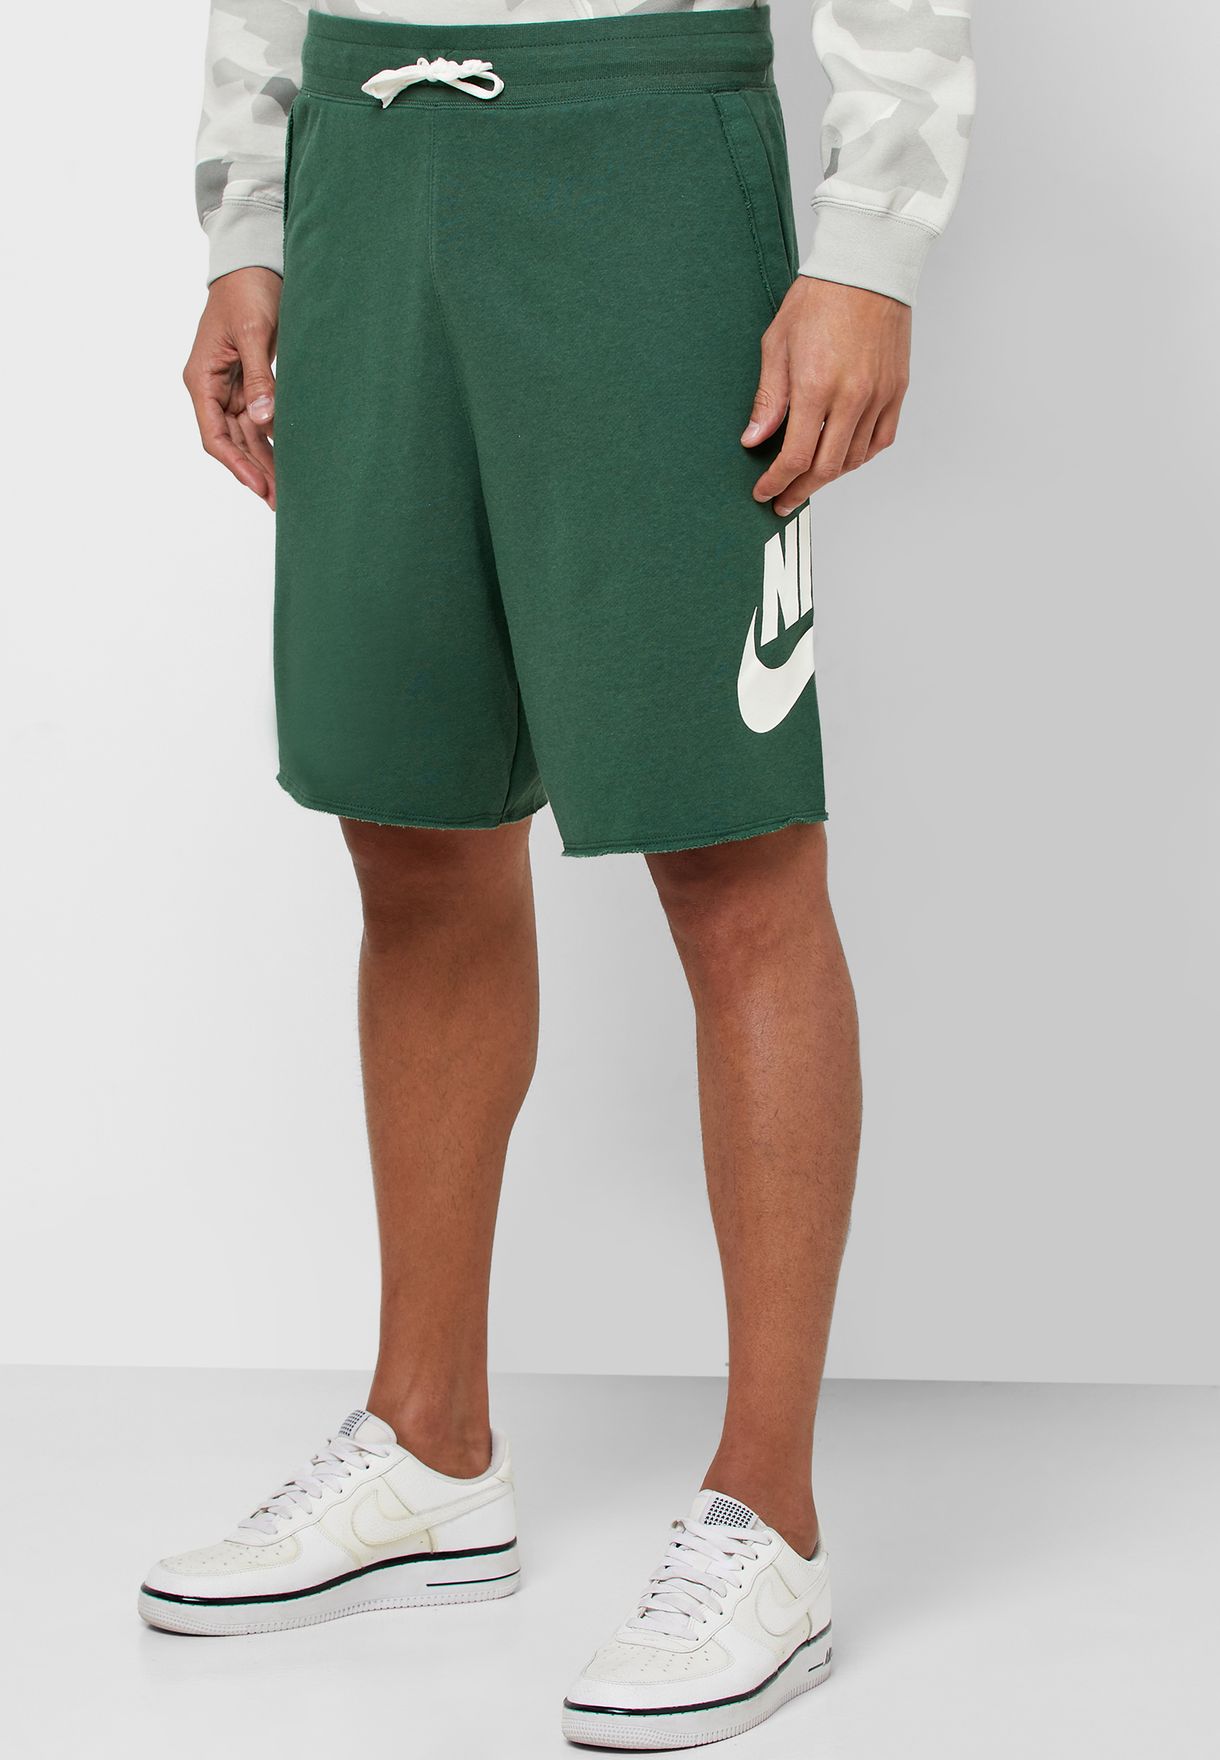 nike green shorts mens